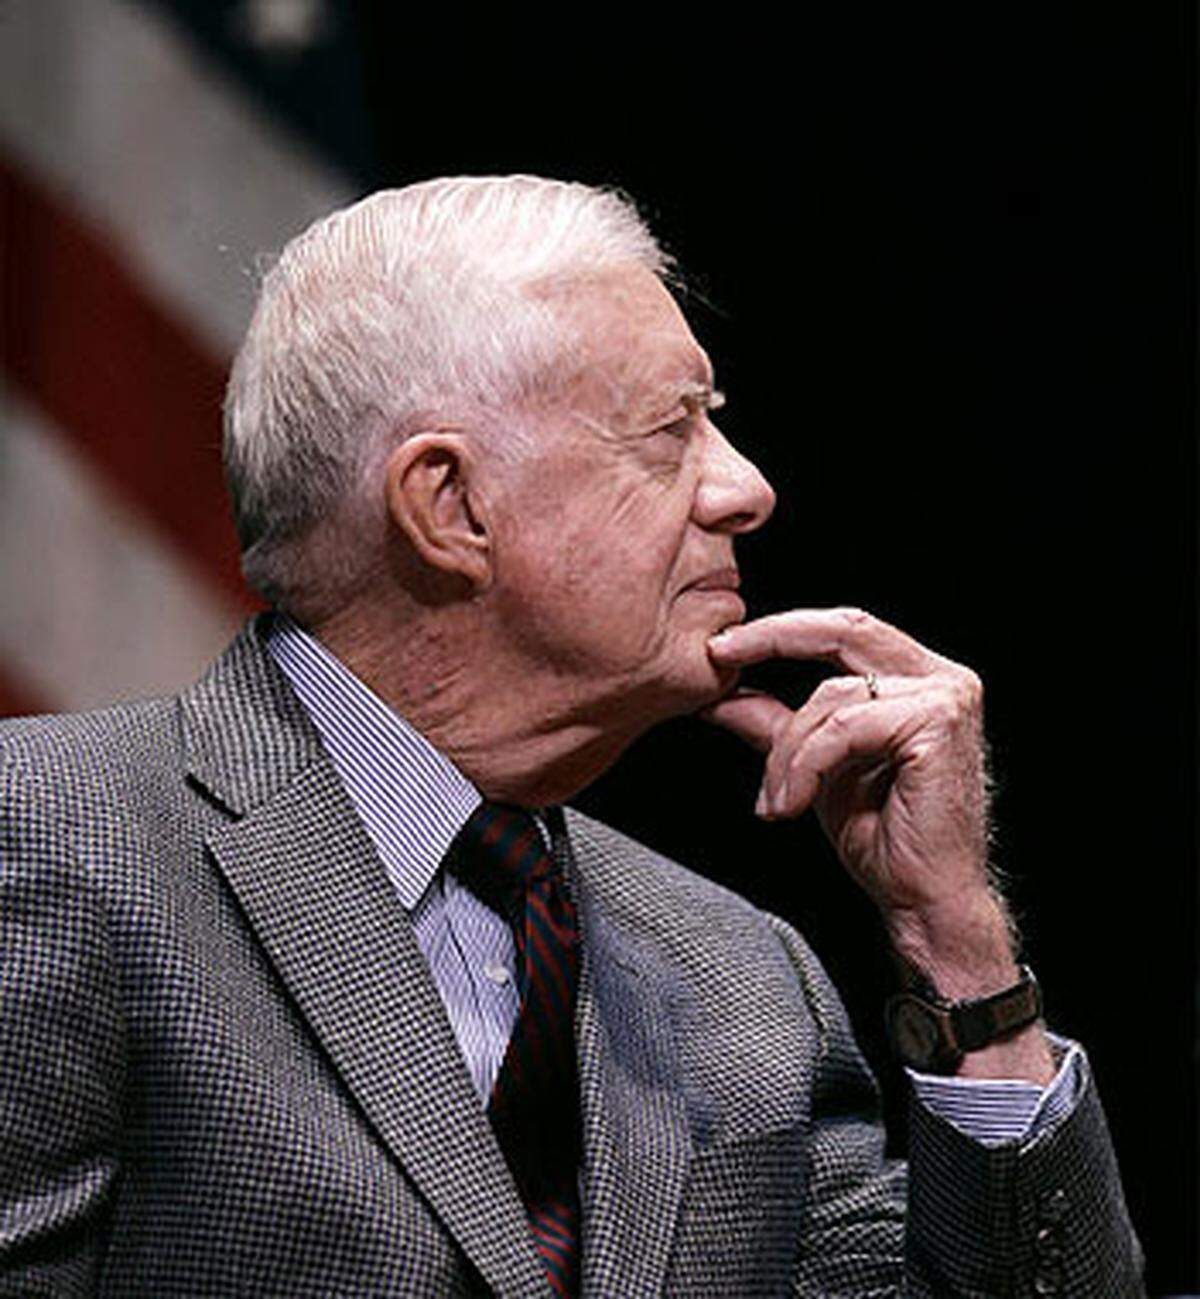 Der frühere US-Präsident Jimmy Carter erhielt den Preis für seine Bemühungen um friedliche Lösungen in internationalen Konflikten und für die Förderung von Demokratie und Menschenrechten.